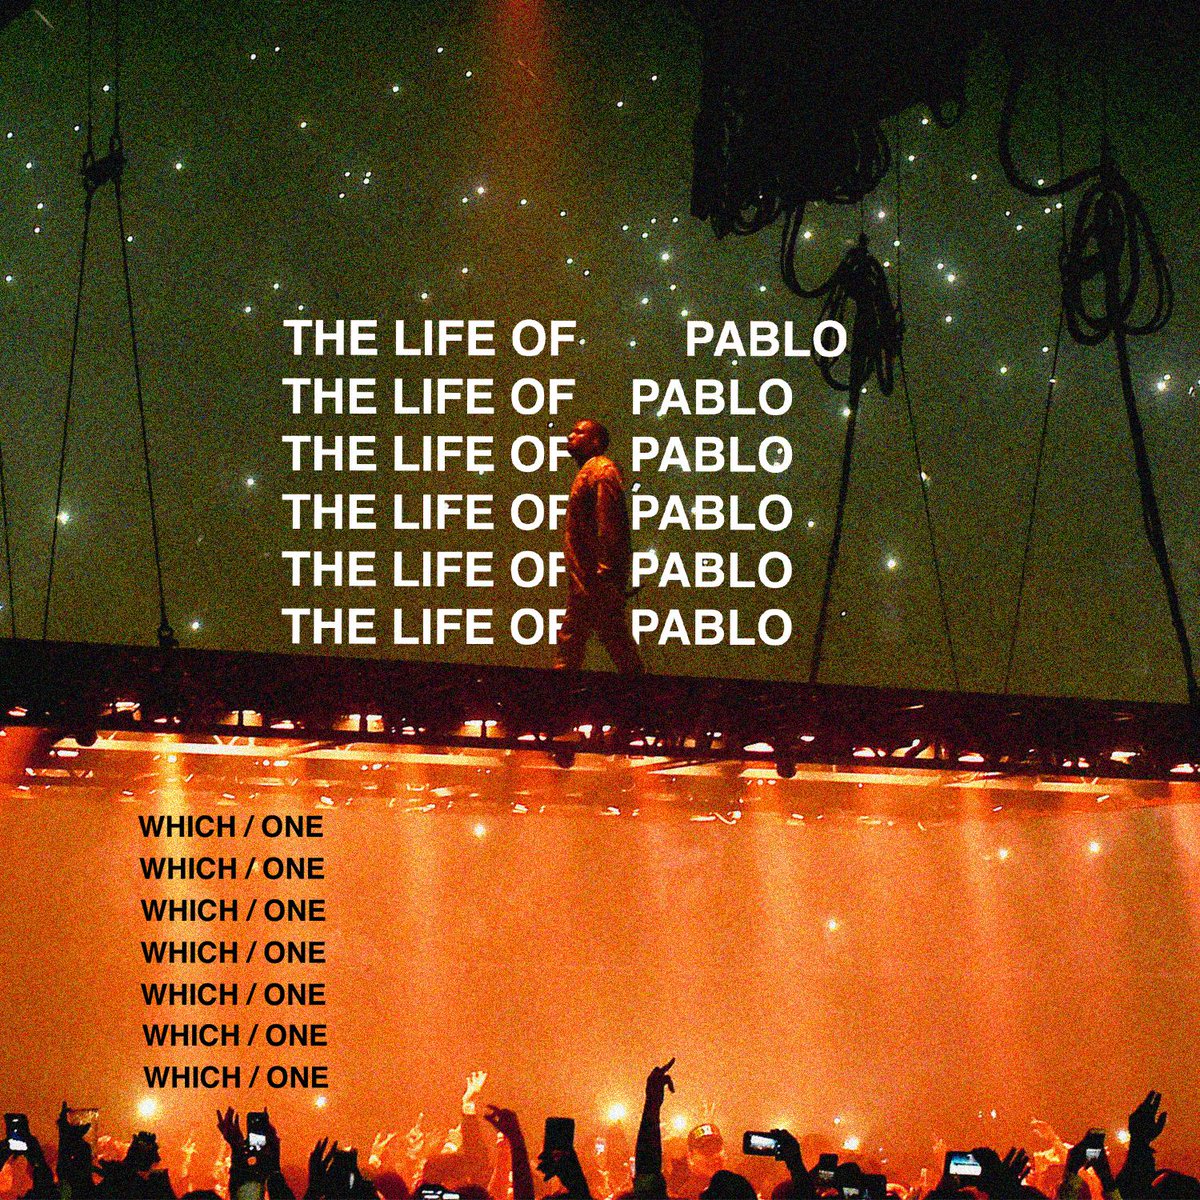 Le 7ème album de Yeezus a été repoussé mainte et mainte fois, prenant différentes forme et différentes appellations, et c’est finalement le 11 février 2016 que The Life of Pablo arrive enfin, diffusé en direct dans des centaines de théâtres dans le monde.